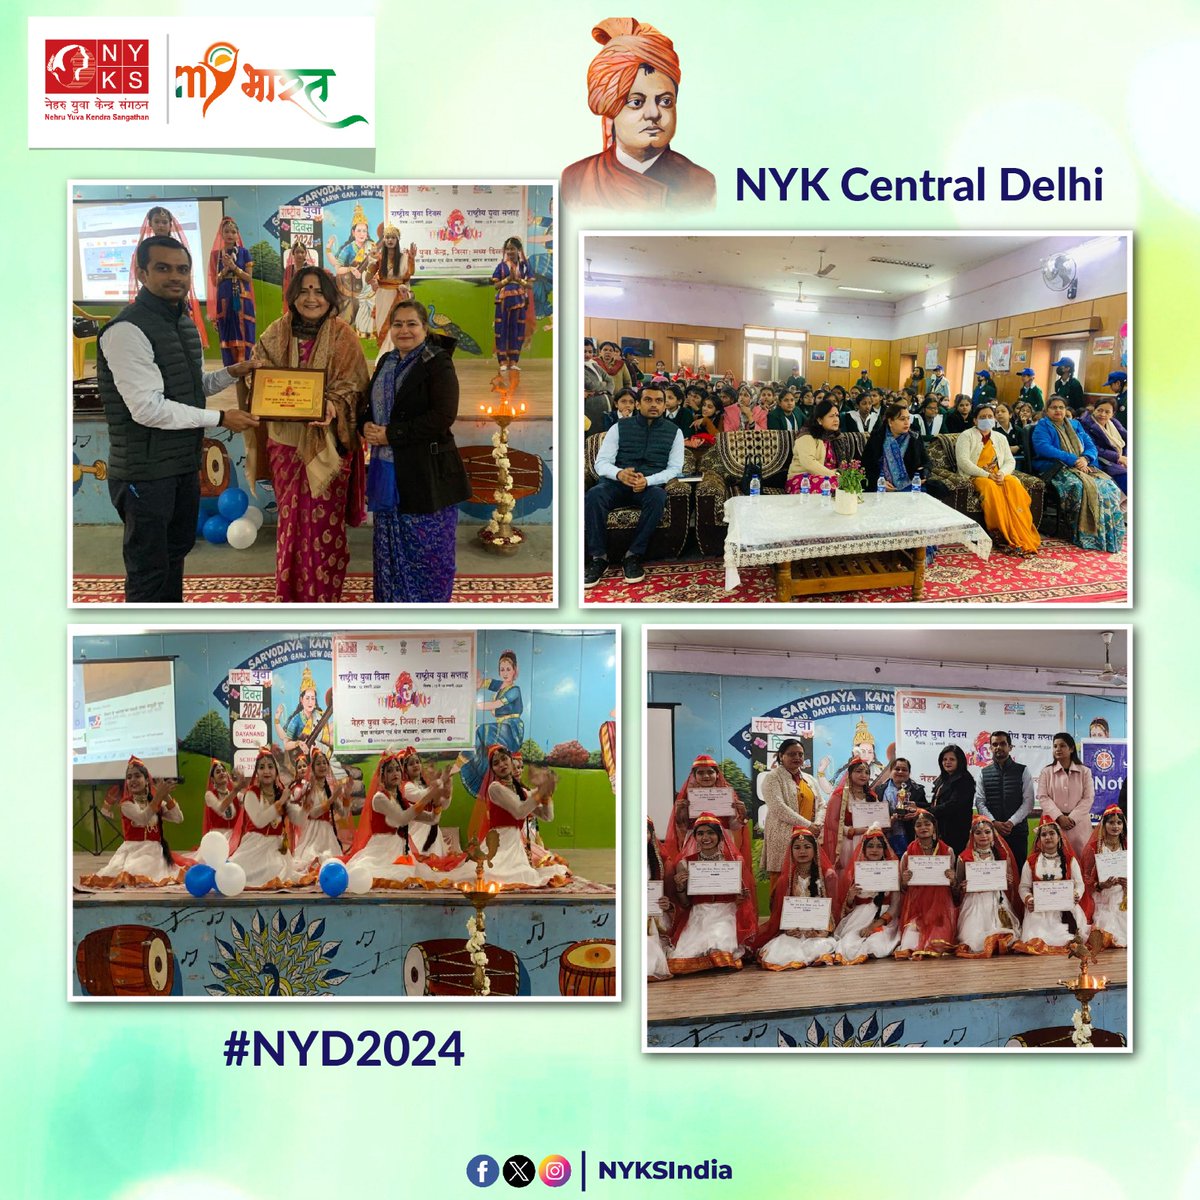 ने.यु.के. मध्य दिल्ली द्वारा #राष्ट्रीय_युवा_दिवस पर विशेष कार्यक्रम का आयोजन सर्वोदय कन्या विद्यालय,दरियागंज में किया गया। इस कार्यक्रम में श्रीमती राजेश्वरी कापड़ी, डिप्टी डायरेक्टर एजुकेशन(सेंट्रल जोन), श्रीमती श्वेता सचदेवा, प्रिंसिपलतथा अन्य शिक्षण गण मौजूद थे। #NYD2024